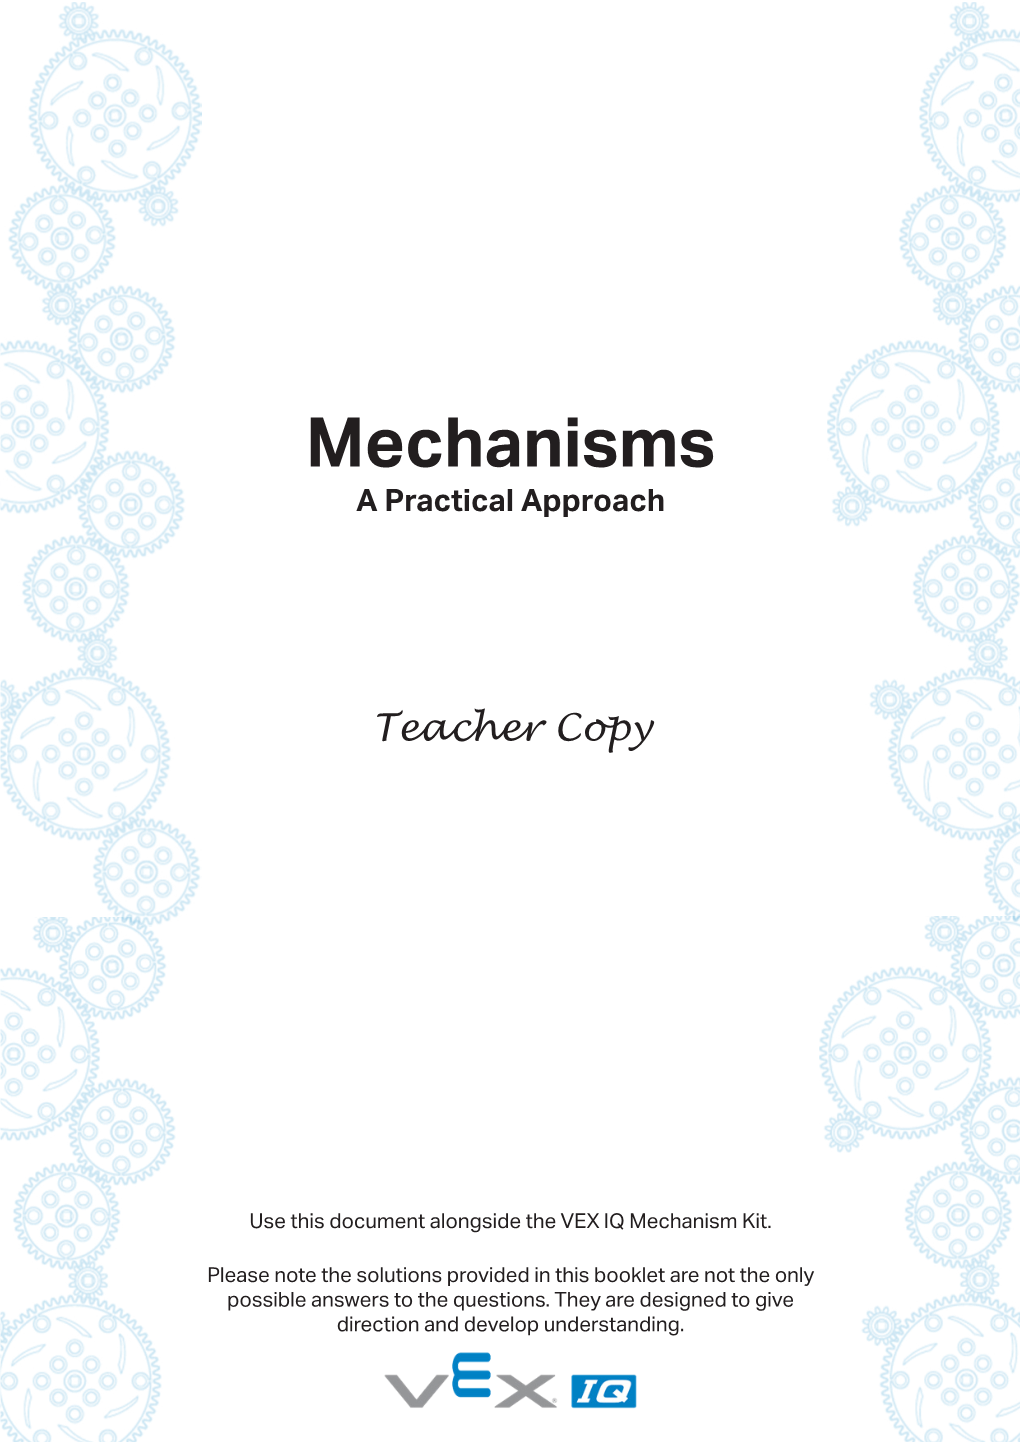 Mechanisms a Practical Approach